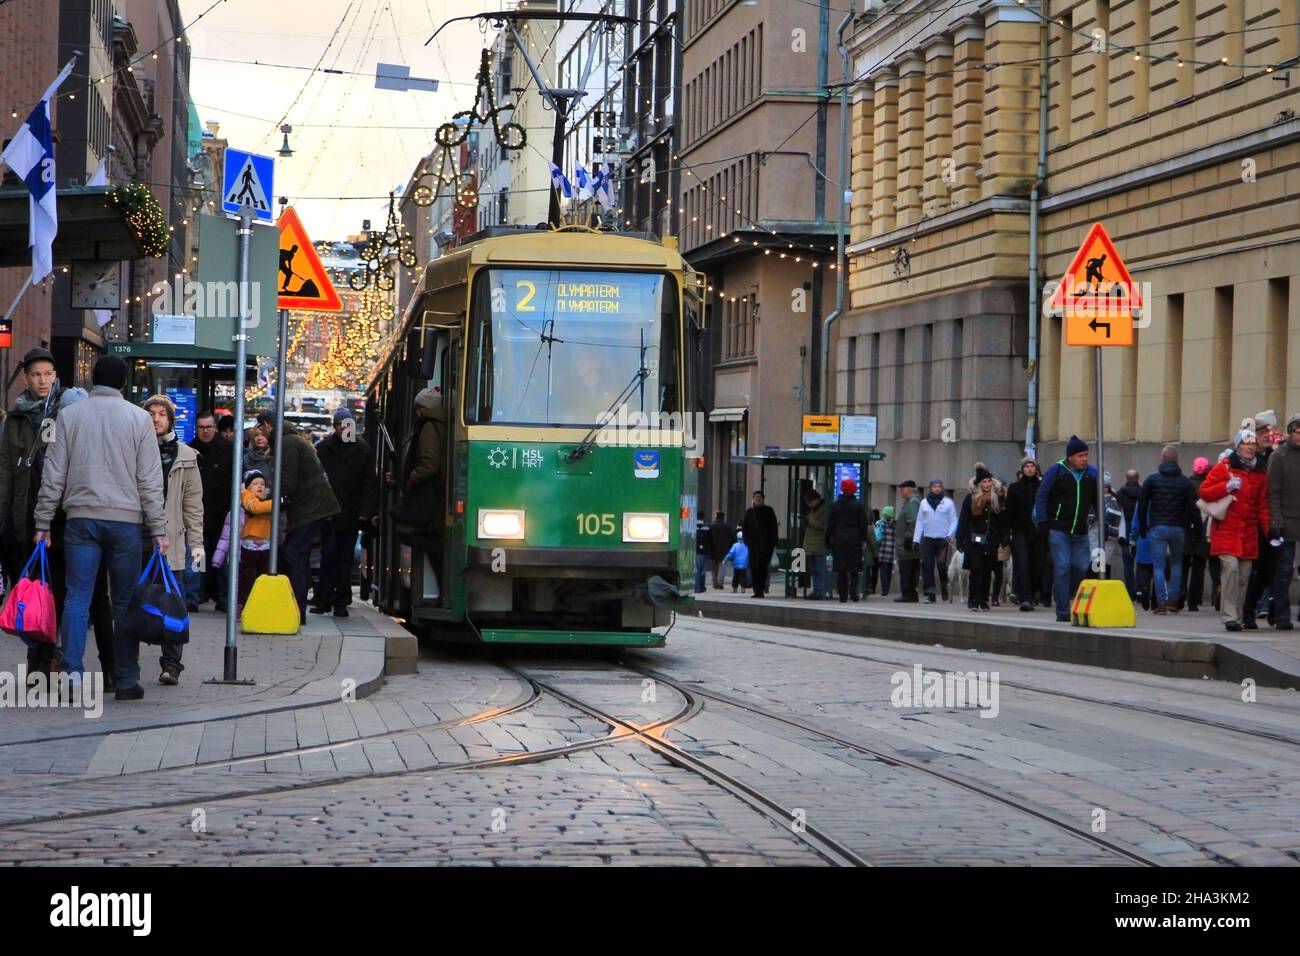 Gli amanti dello shopping e i viaggiatori nell'affollata Aleksanterinkatu con il tram Green HSL alla fermata Senaatintori. Helsinki, Finlandia. Dicembre 6, 2017. Foto Stock